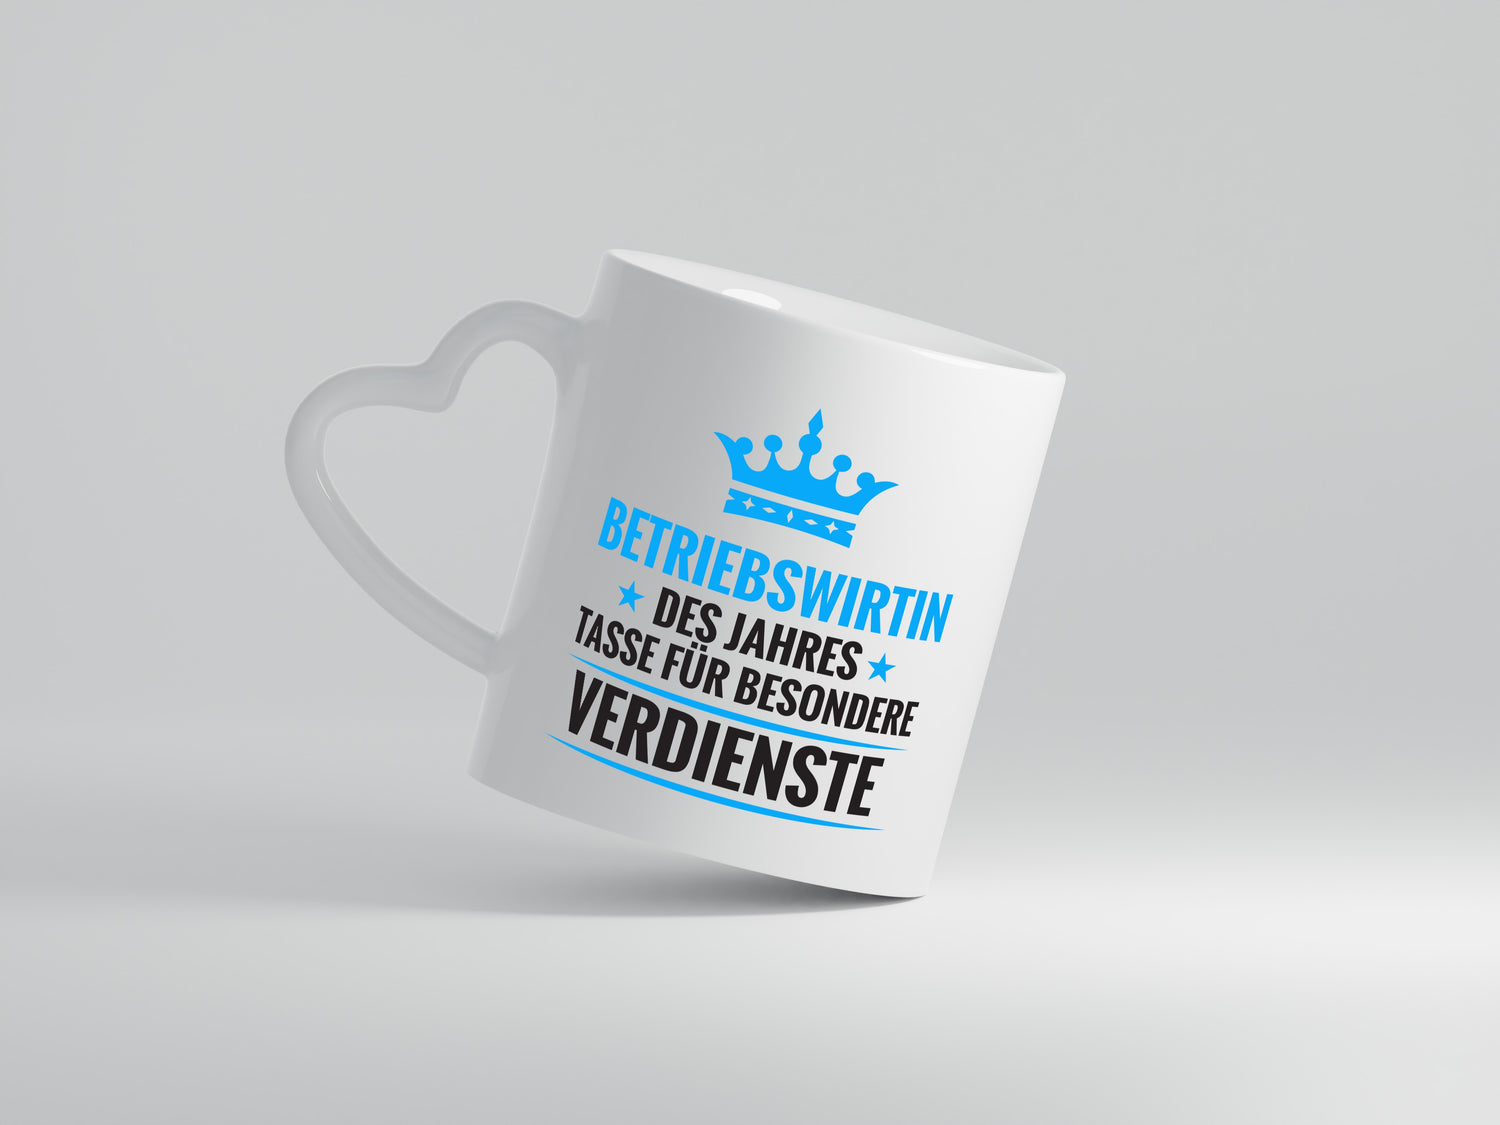 Besonderer Verdienst: Betriebswirtin | Betriebswirtschaft - Herzhenkel Tasse - Kaffeetasse / Geschenk / Familie